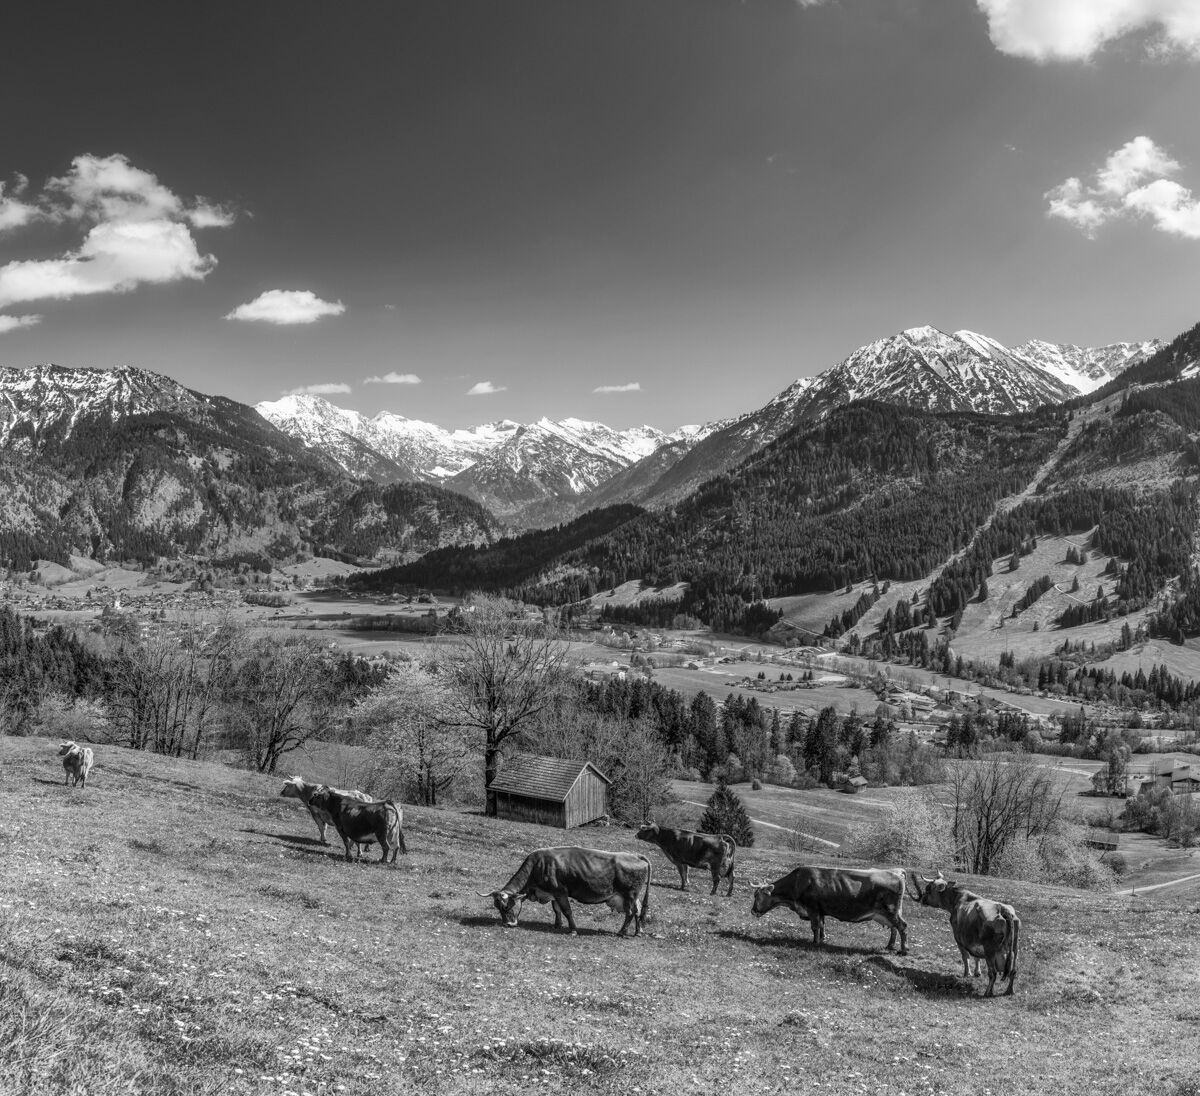 kuhbilder aus dem allgäu leinwand schwarz weiß wandbilder foto kaufen Allgäu Alpen Berge Kuh Braunvieh Vieh Rind Kühe Viehscheid Alp Alm Bergsommer himmel sonne